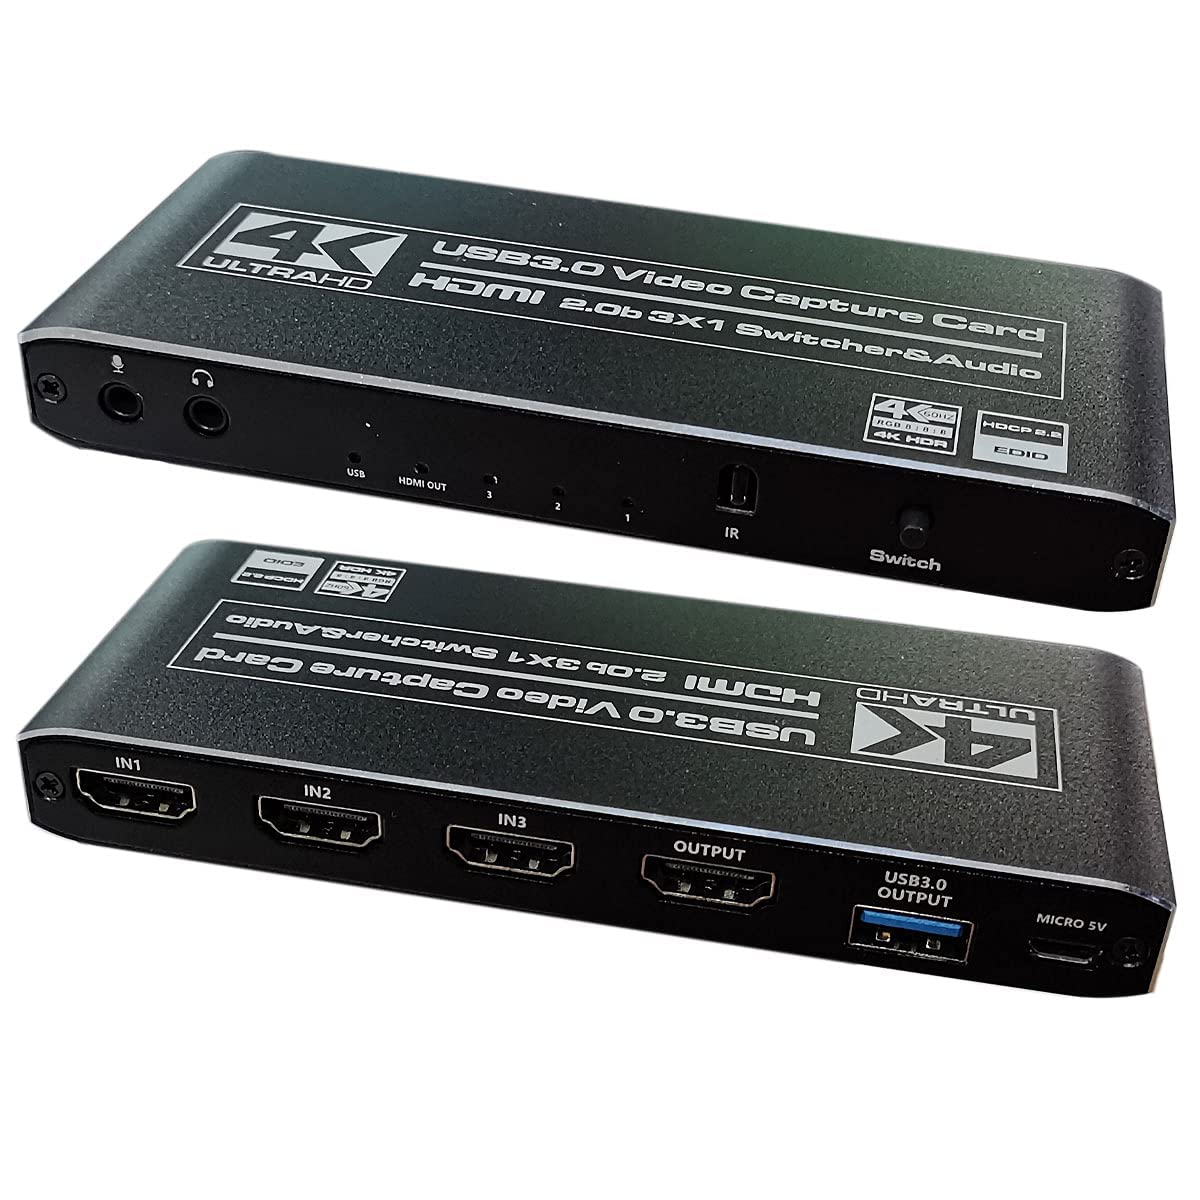 HDMIؑ֊ HDMILv`[ HDMI2.0 HDCP2.2 4K60HZ HDR USB3.0Ή 32o 4K60H @